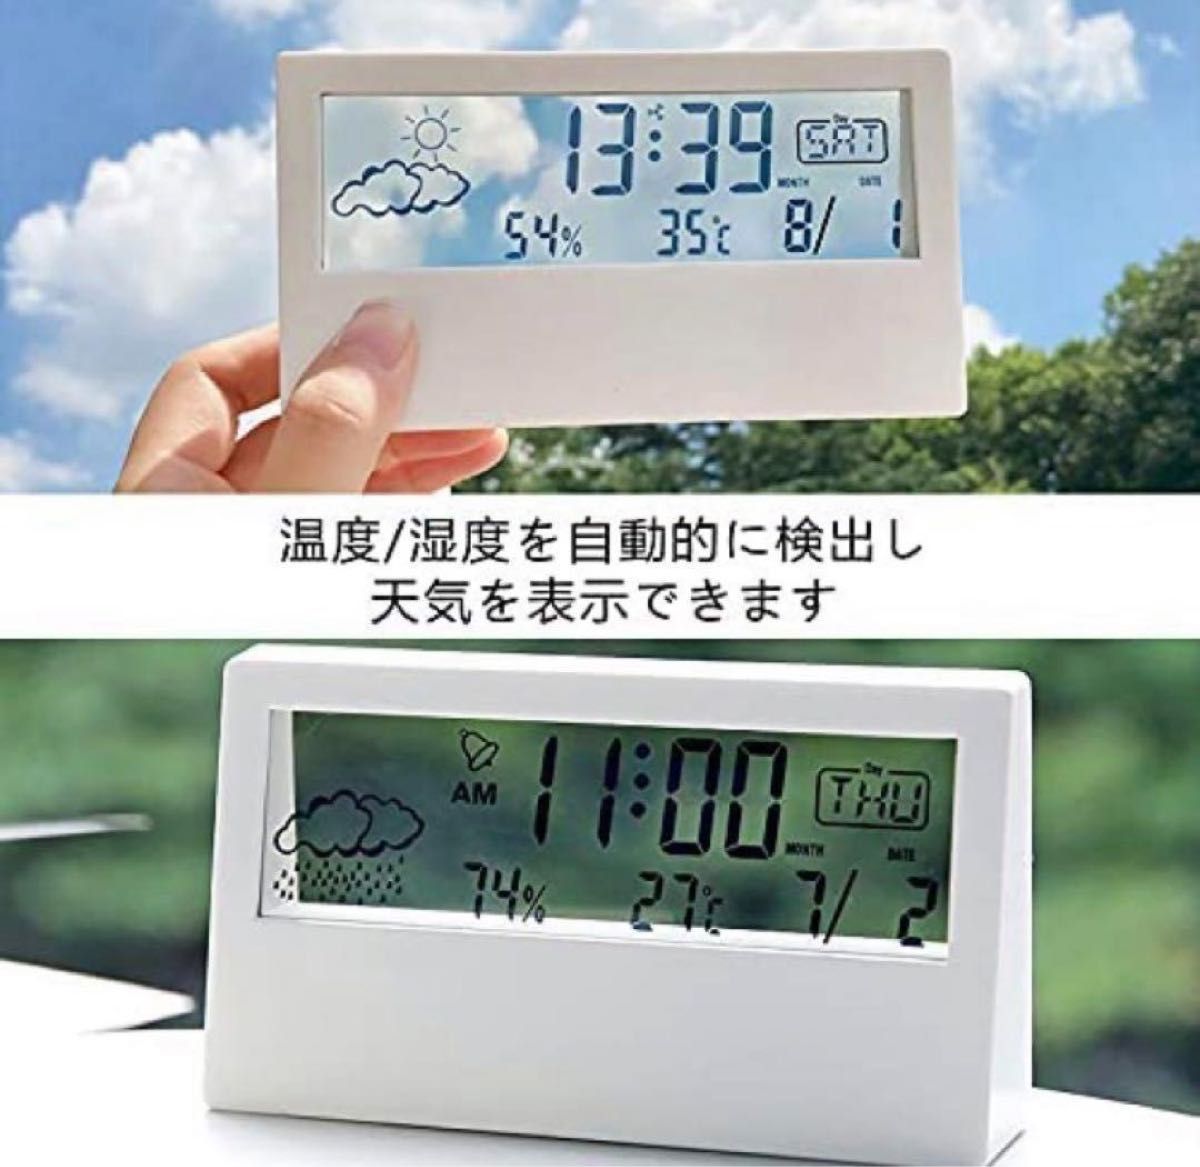 透明 電子時計 置き時計 温度湿度表示 軽量 デジタル スヌーズ 白